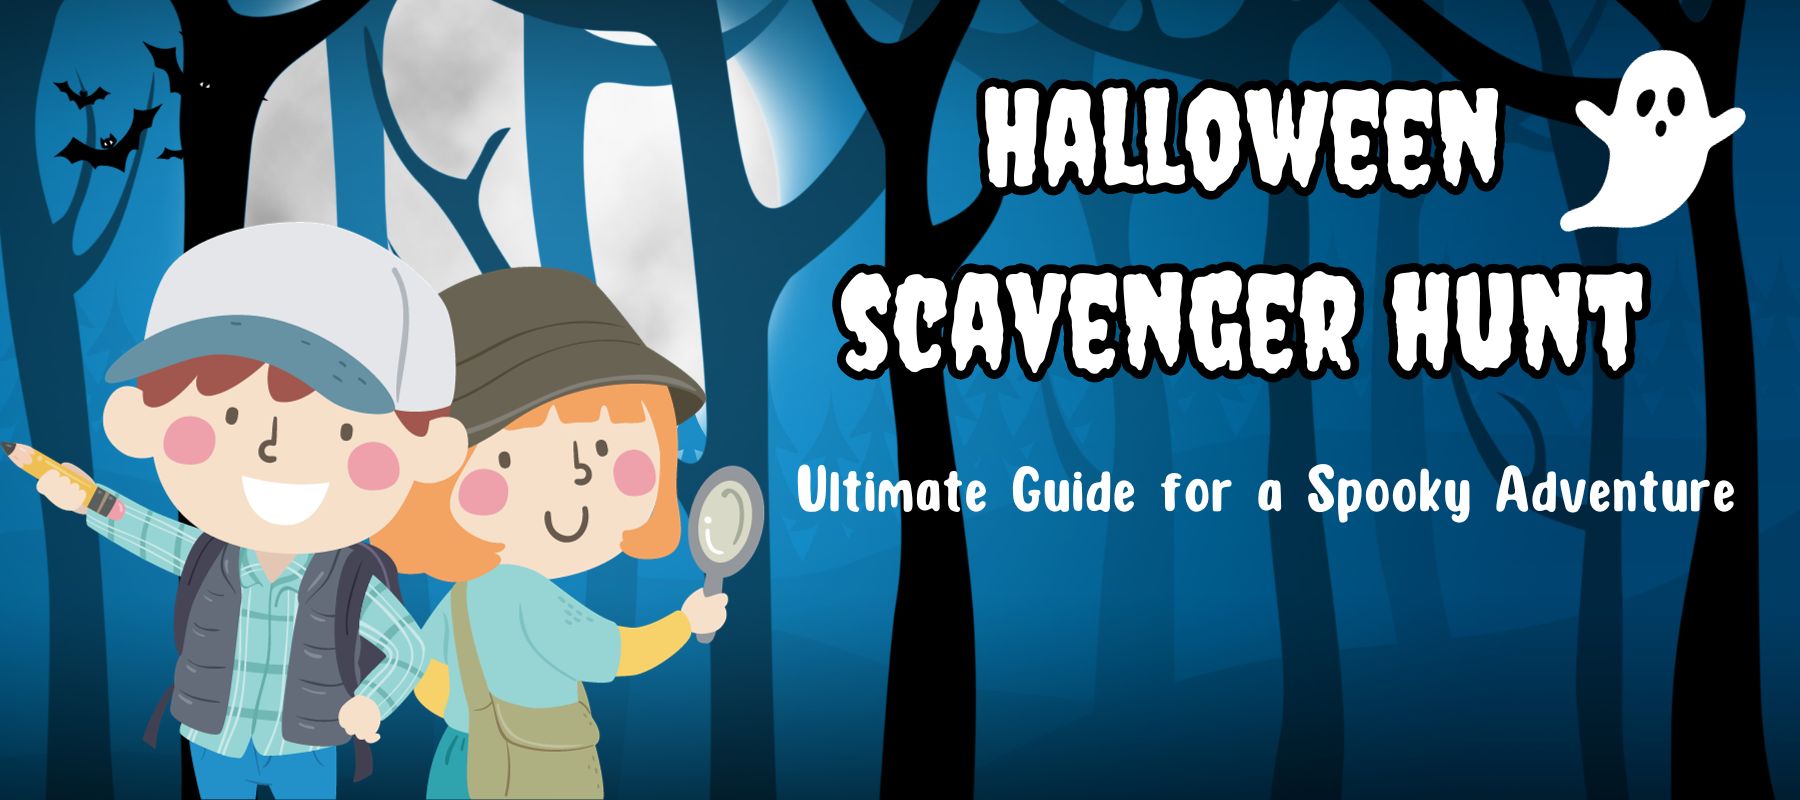 Halloween-scavenger-hunt